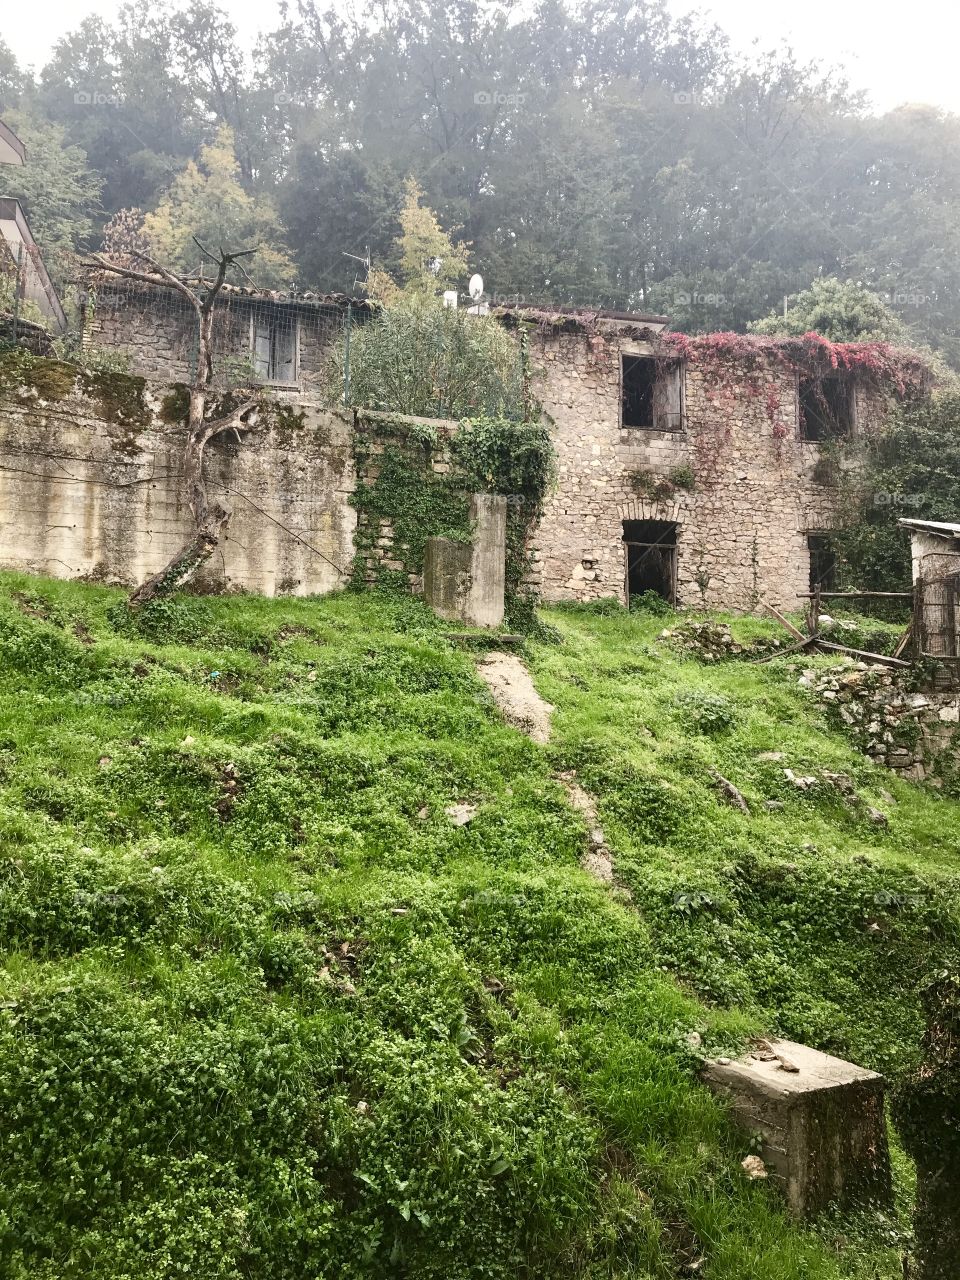 Rainy day ancient village house in Carpineto Romano, Italy